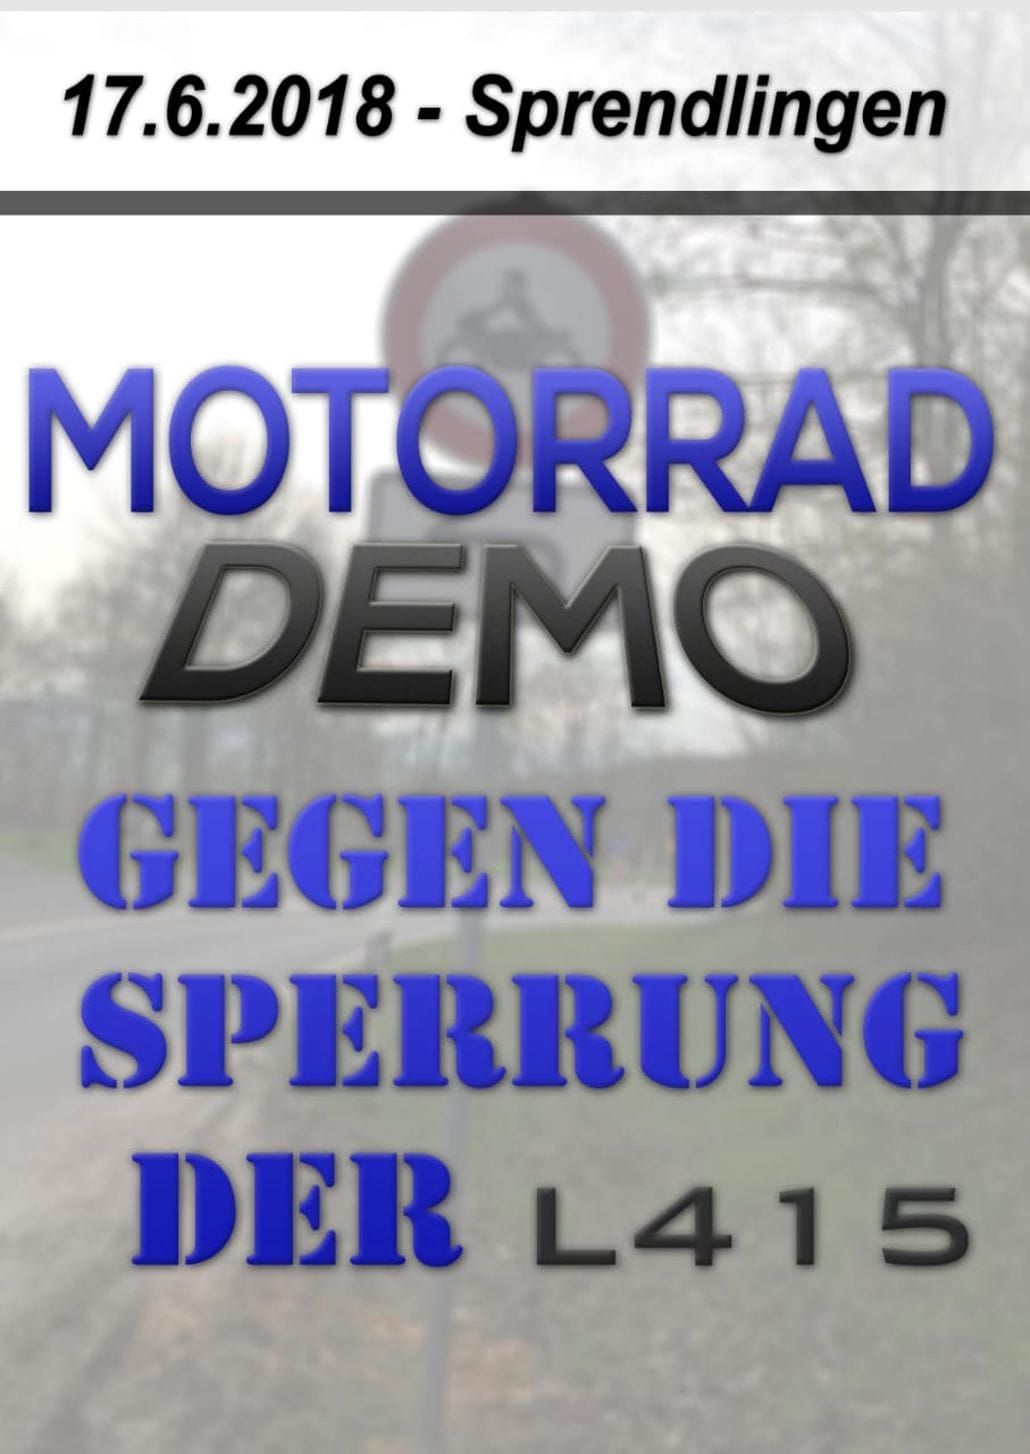 Demo gegen Sperrung L415 2 Motorcycles News